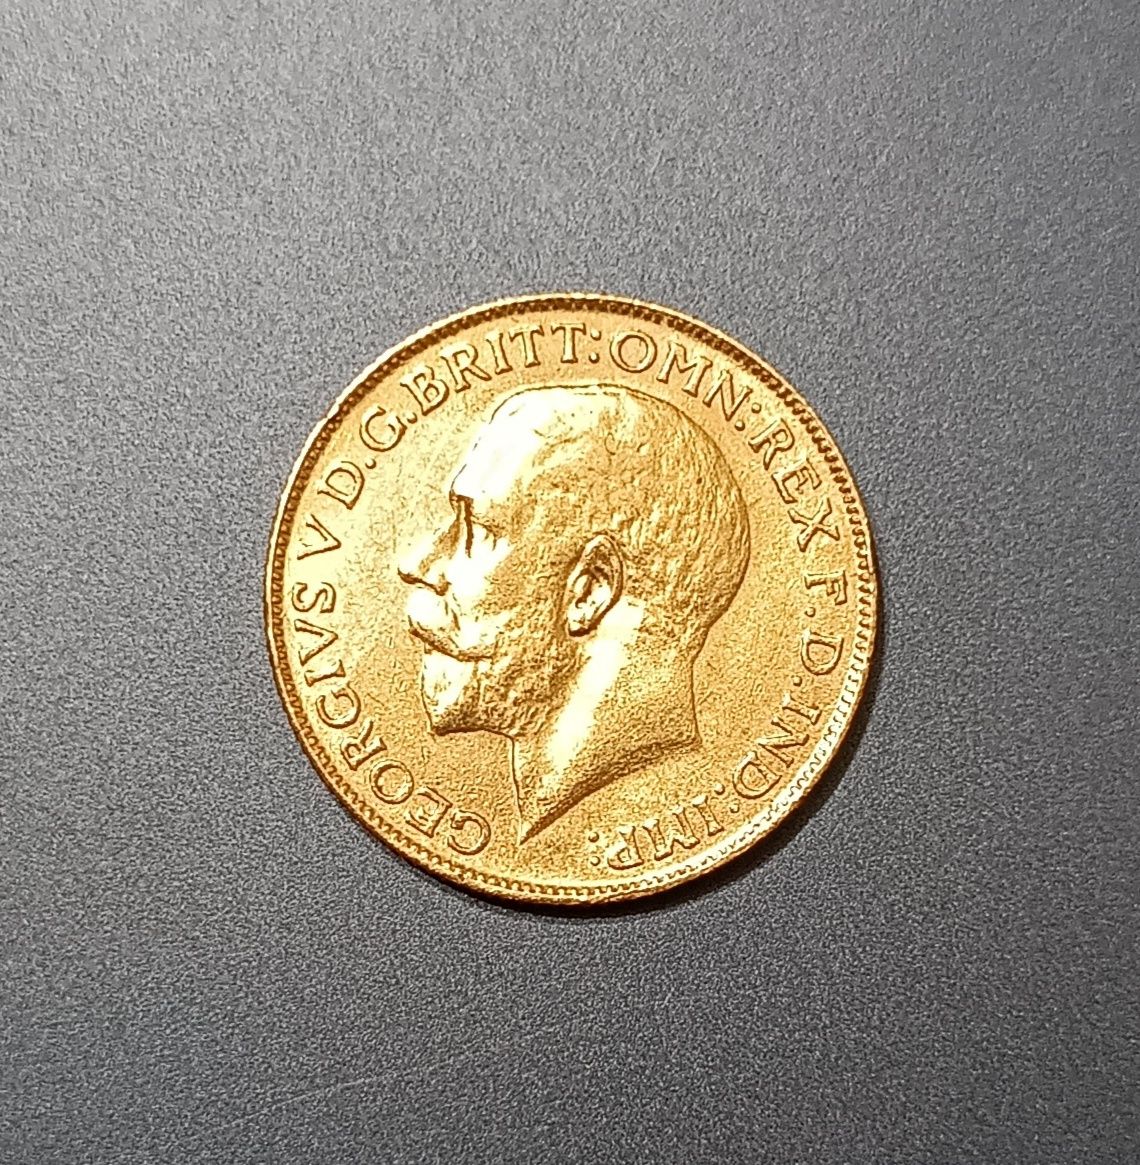 1 соверен/фунт 1927 года, ЮАР, золото 917 проба, редкая